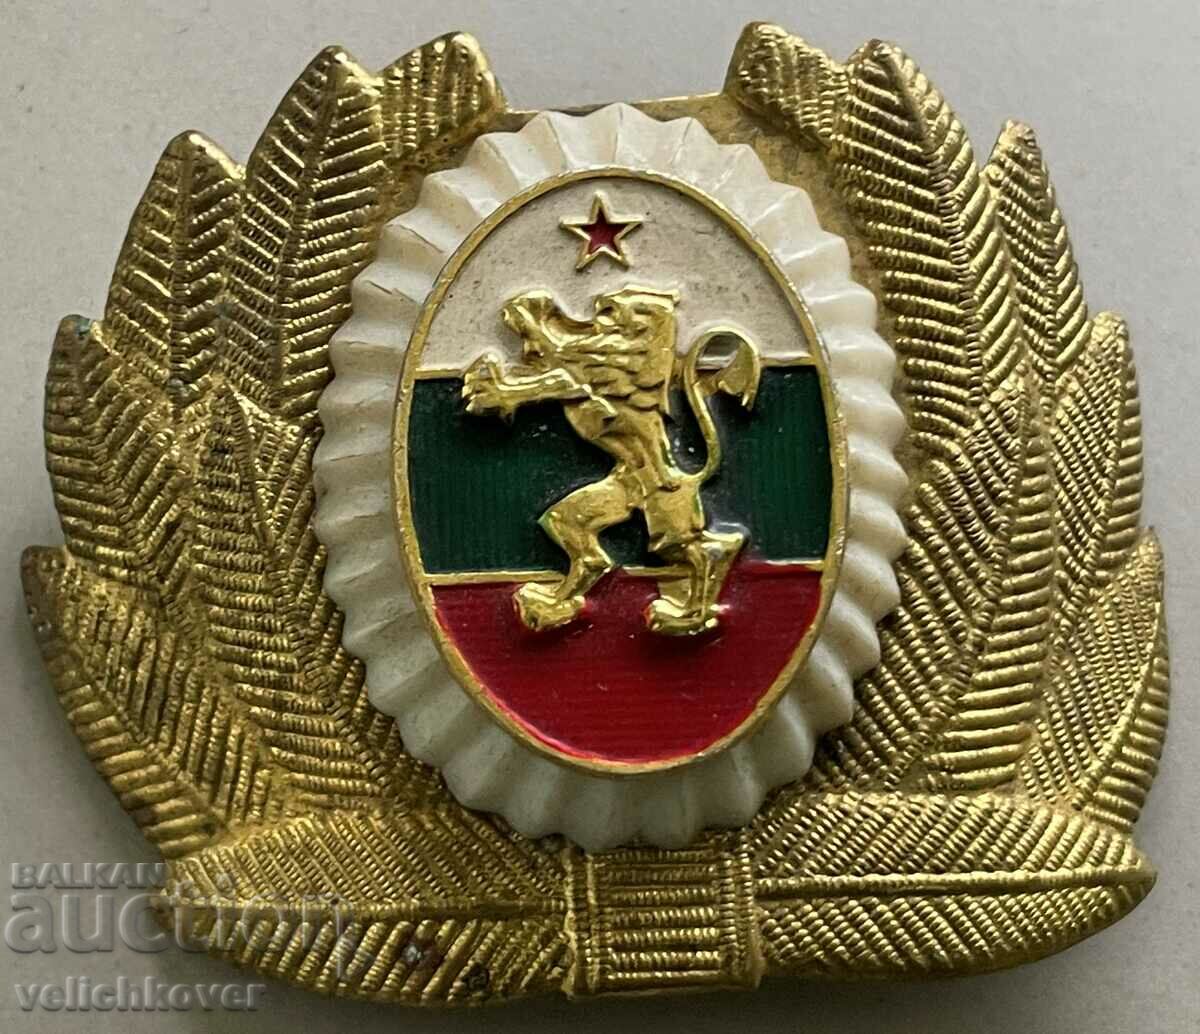 34213 Bulgaria officer's cockade BNA everyday uniform